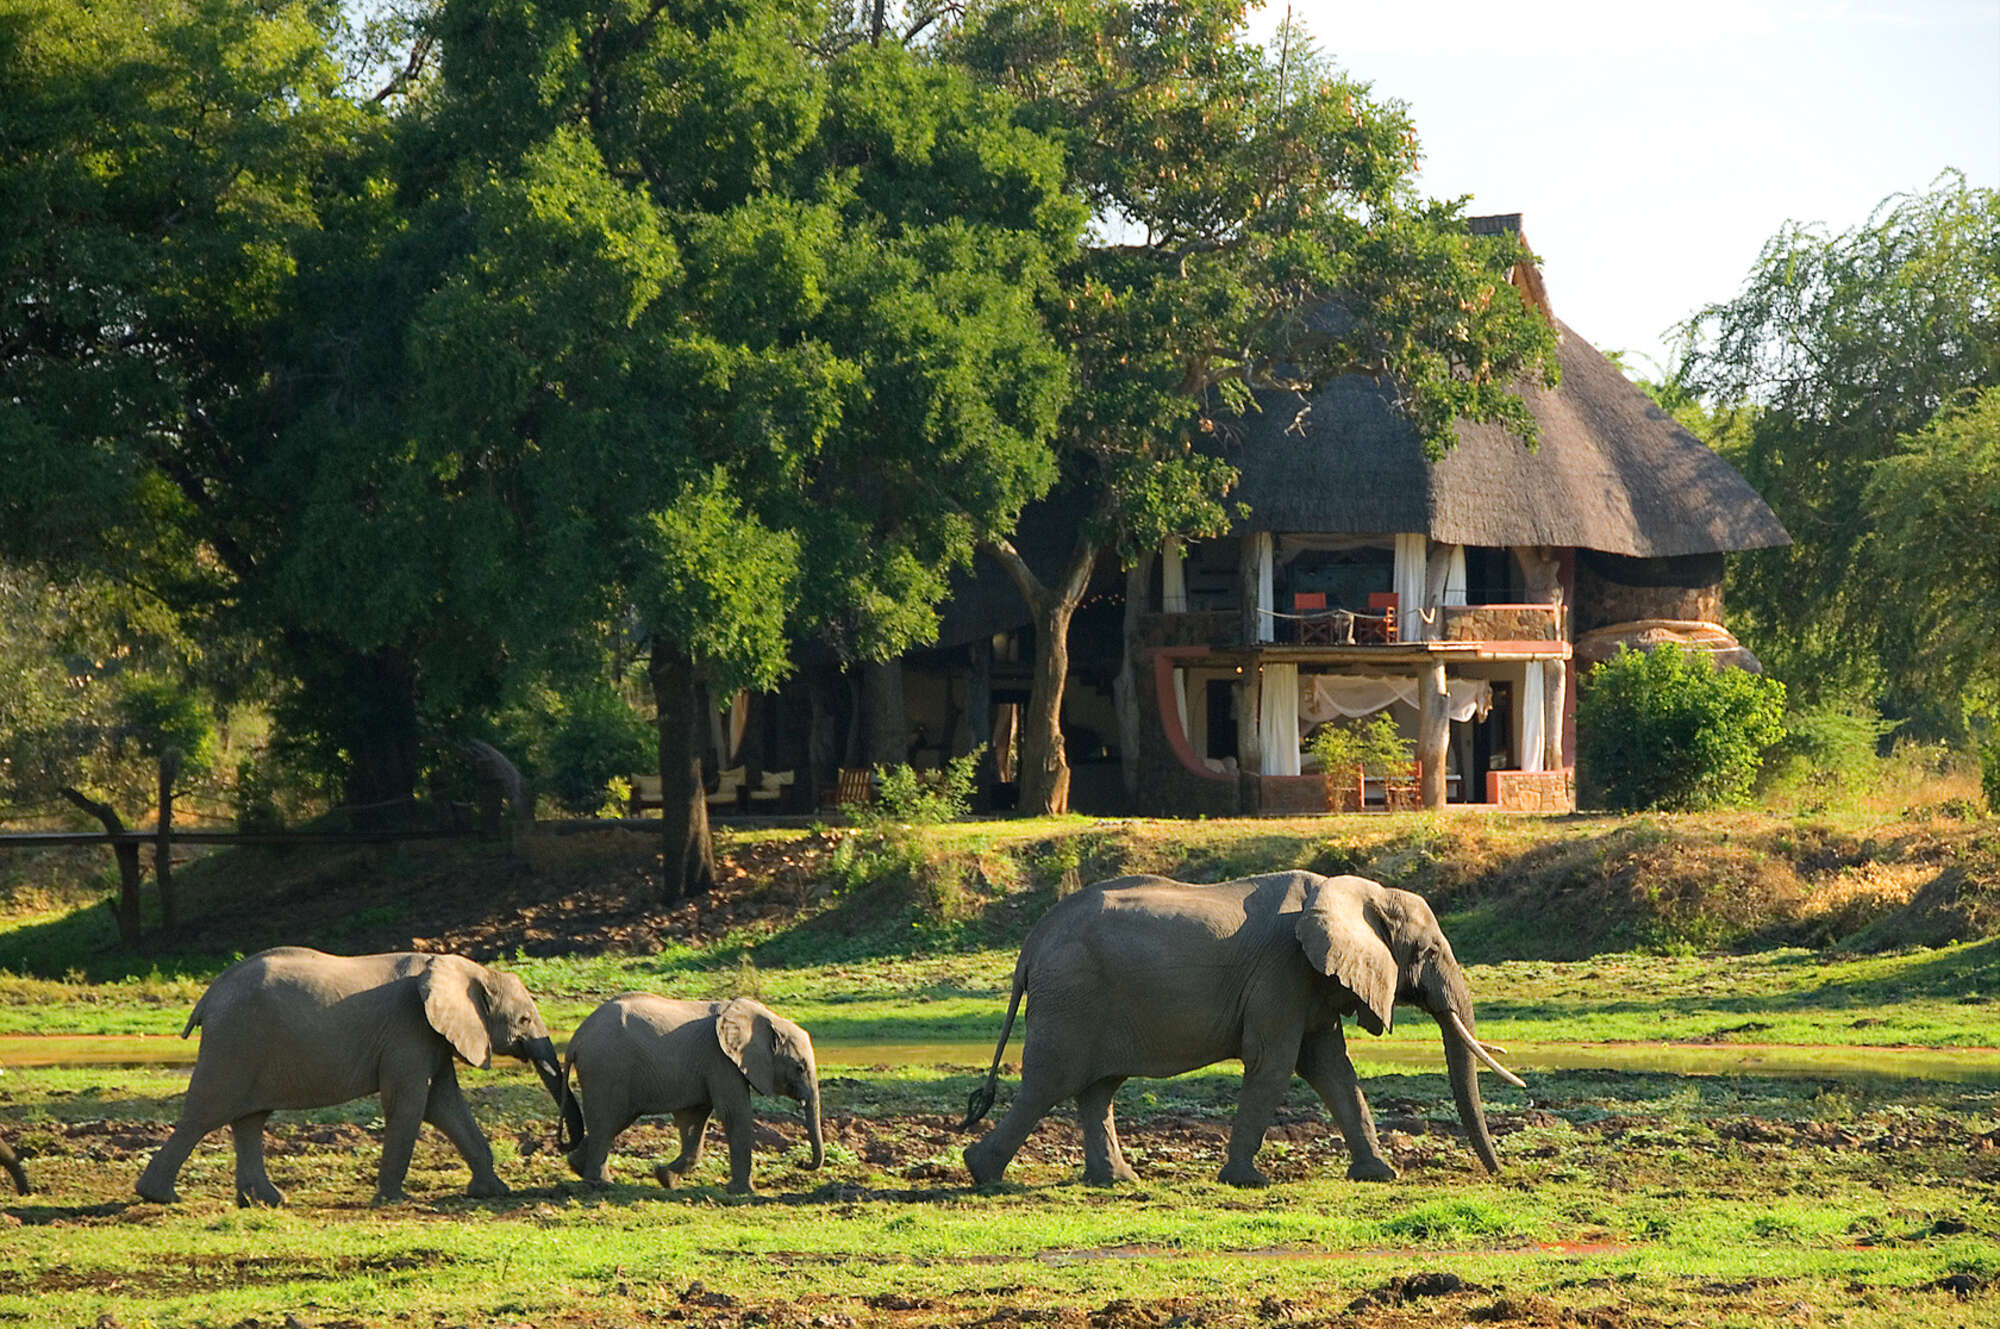 zambia safari options